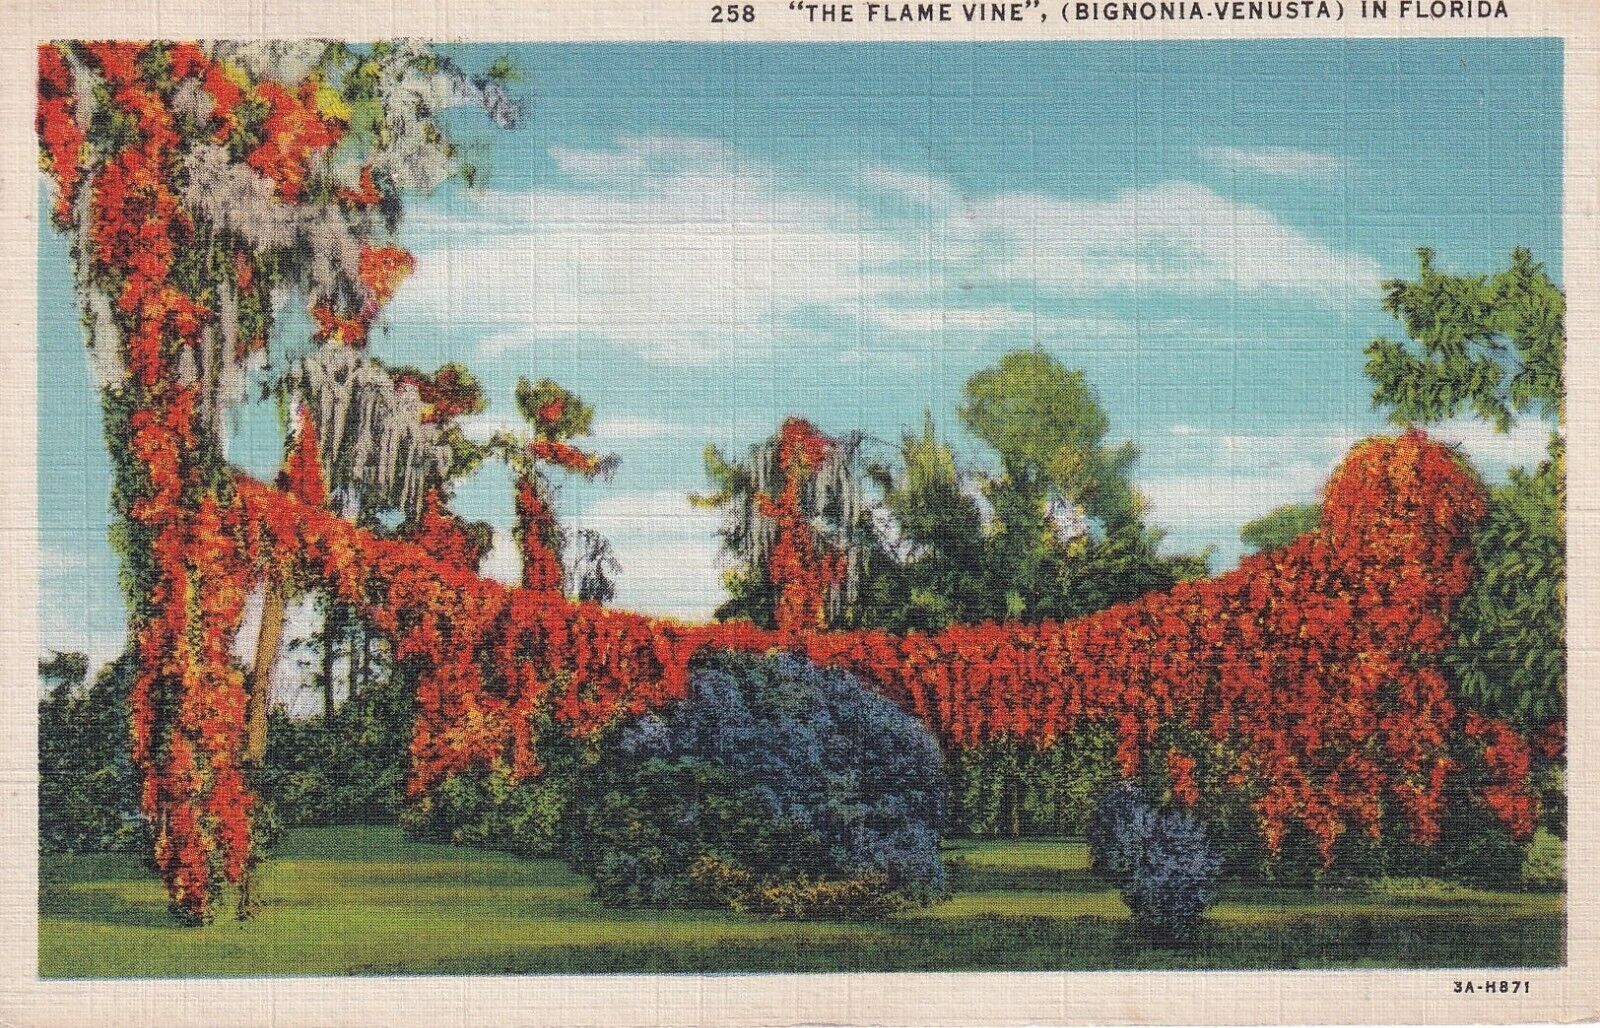 1935 VTG Postcard The Flame Vine Bignonia Venusta in Florida-J675